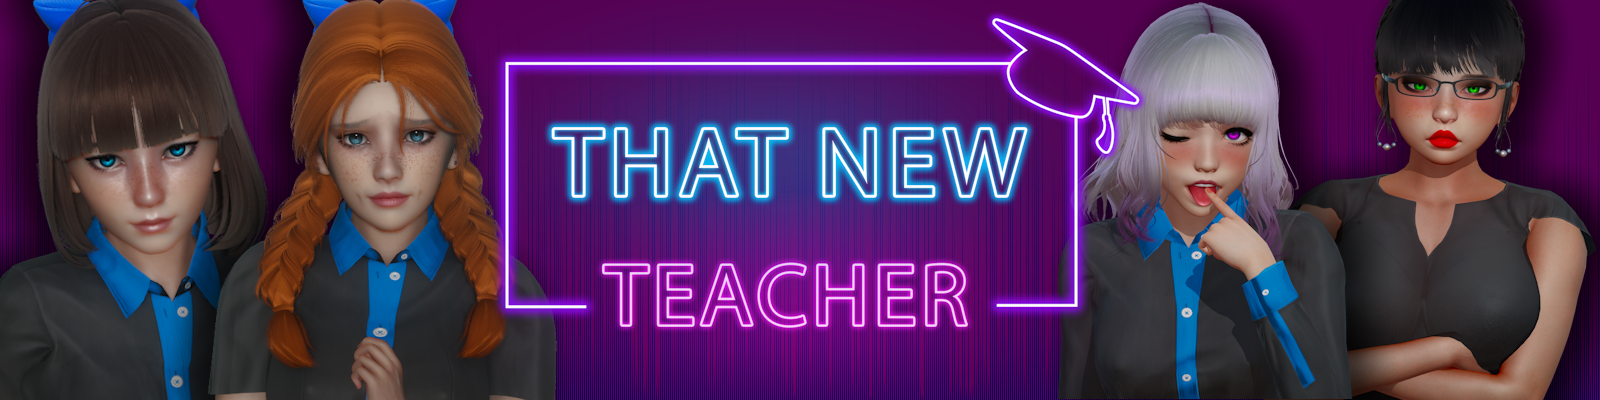 That New Teacher